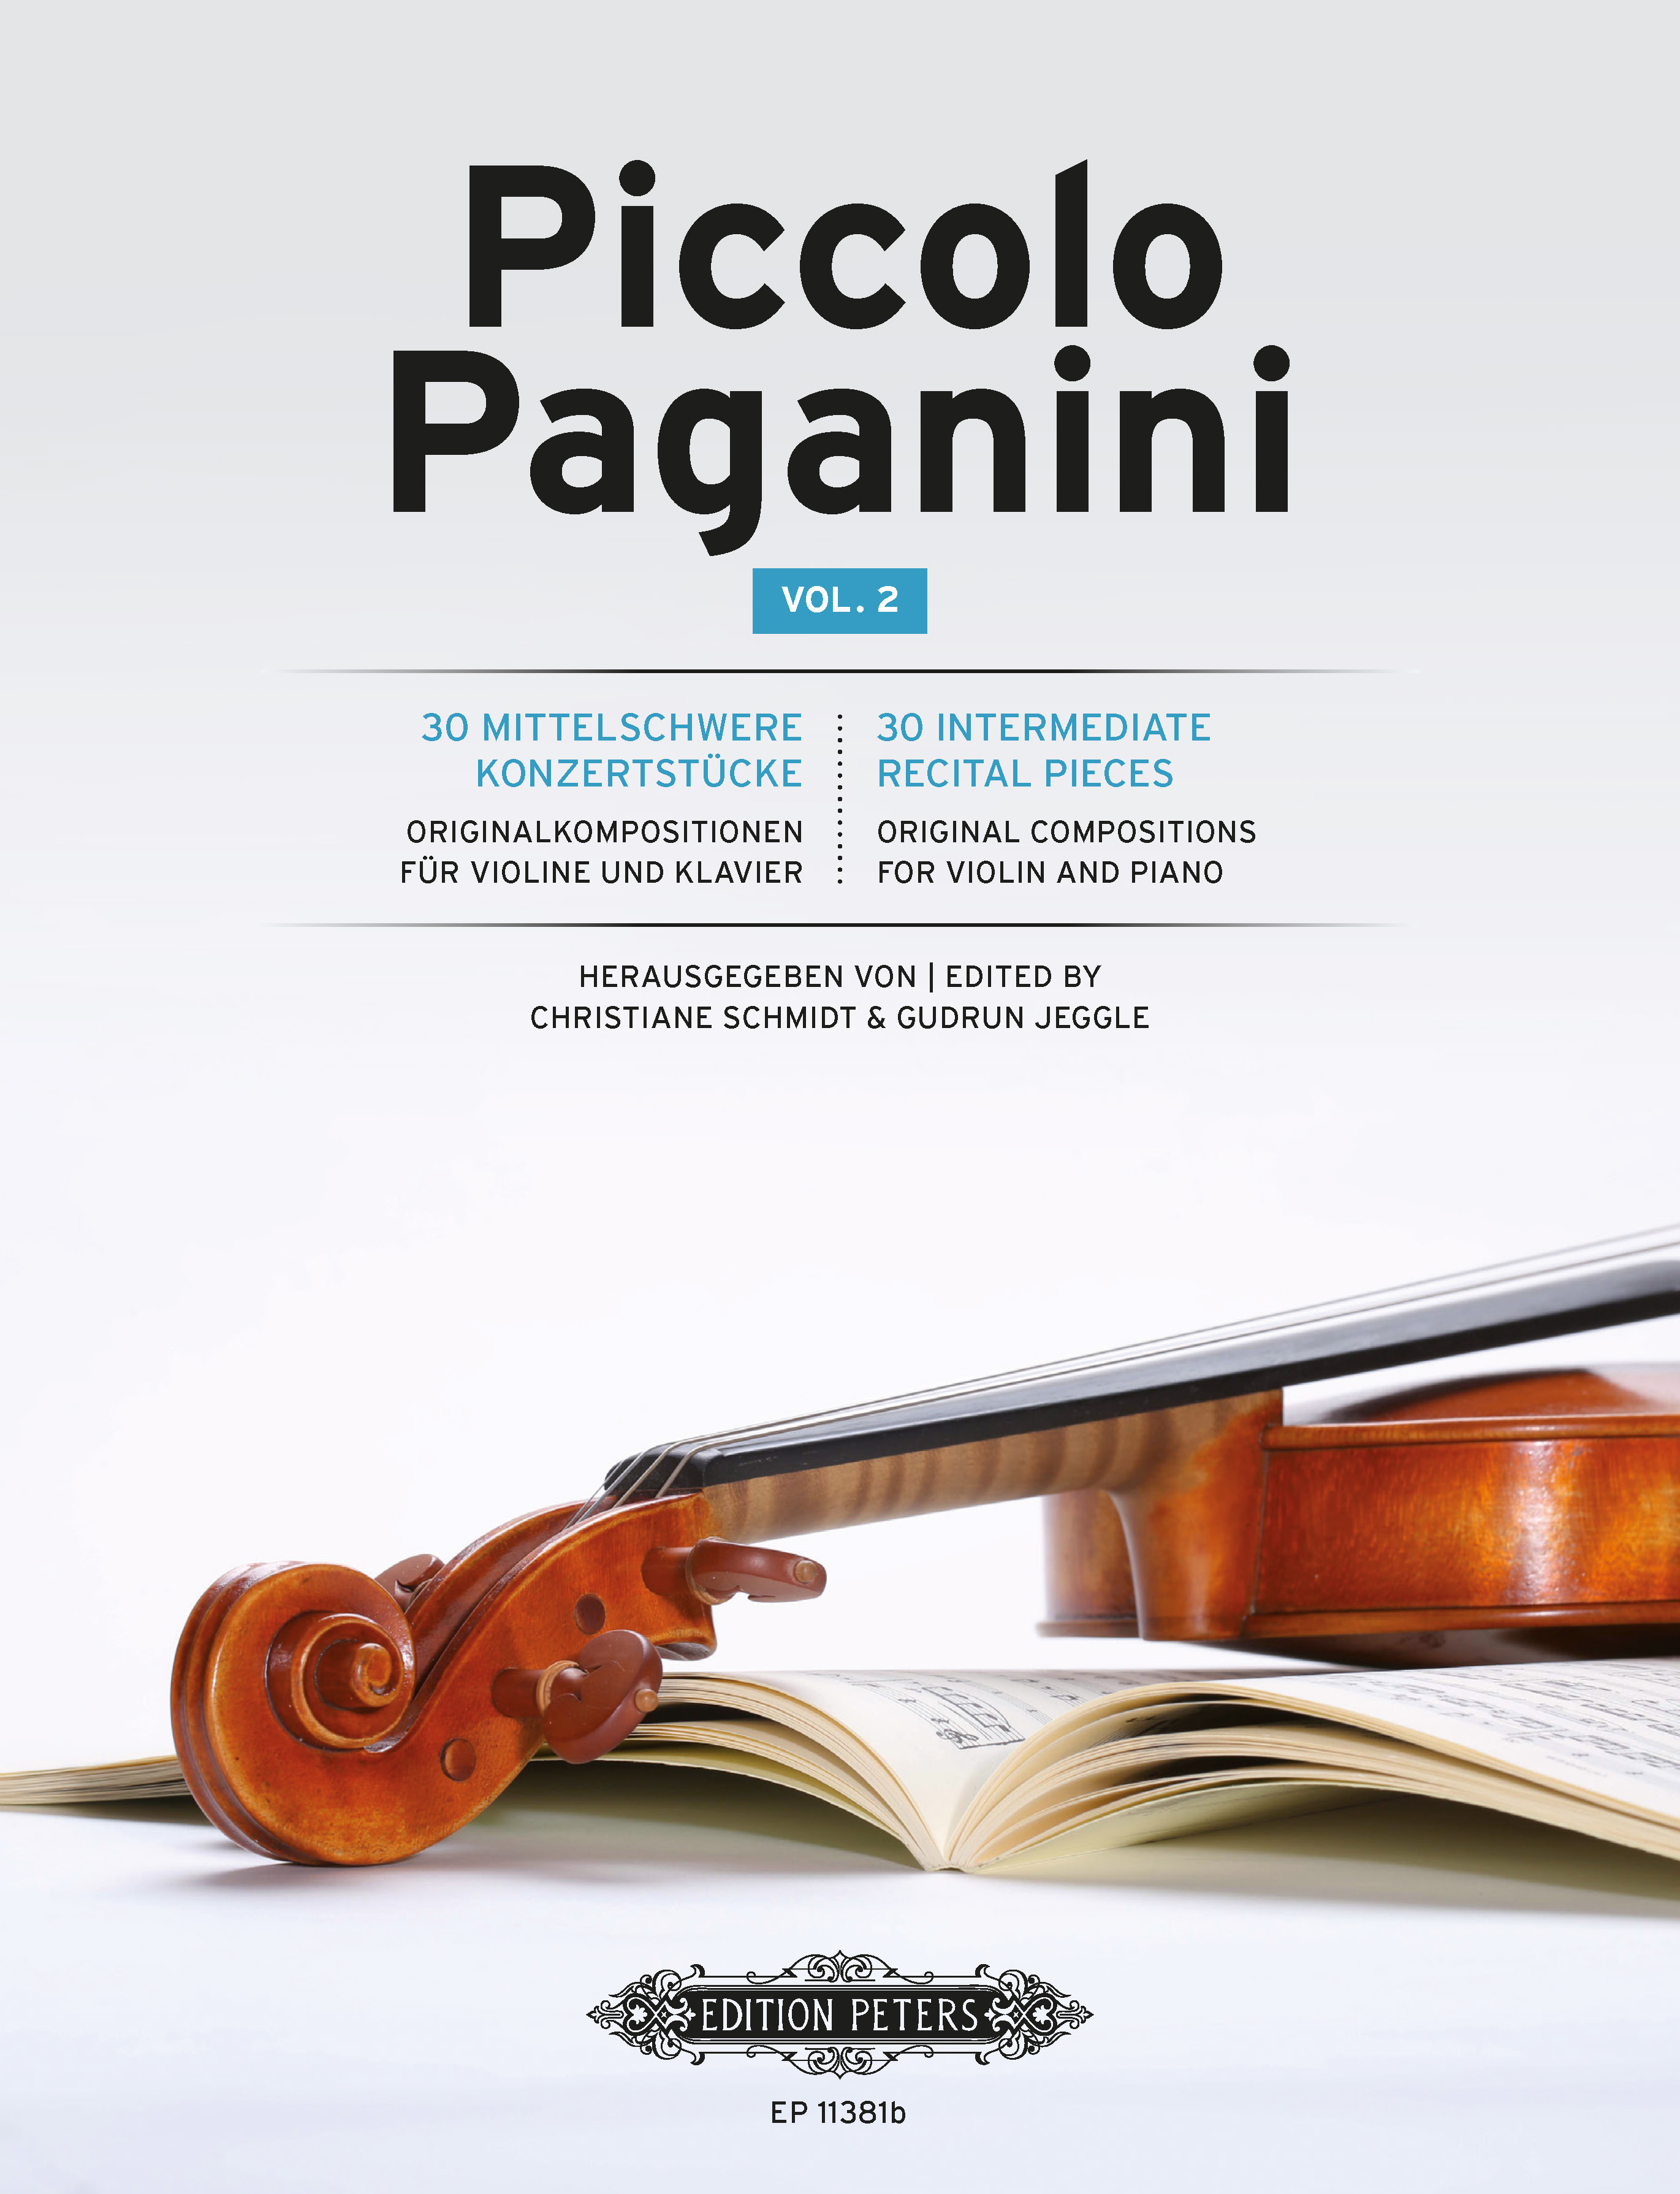 Piccolo Paganini Vol 2 Recital Pieces Violin & Pf Sheet Music Songbook